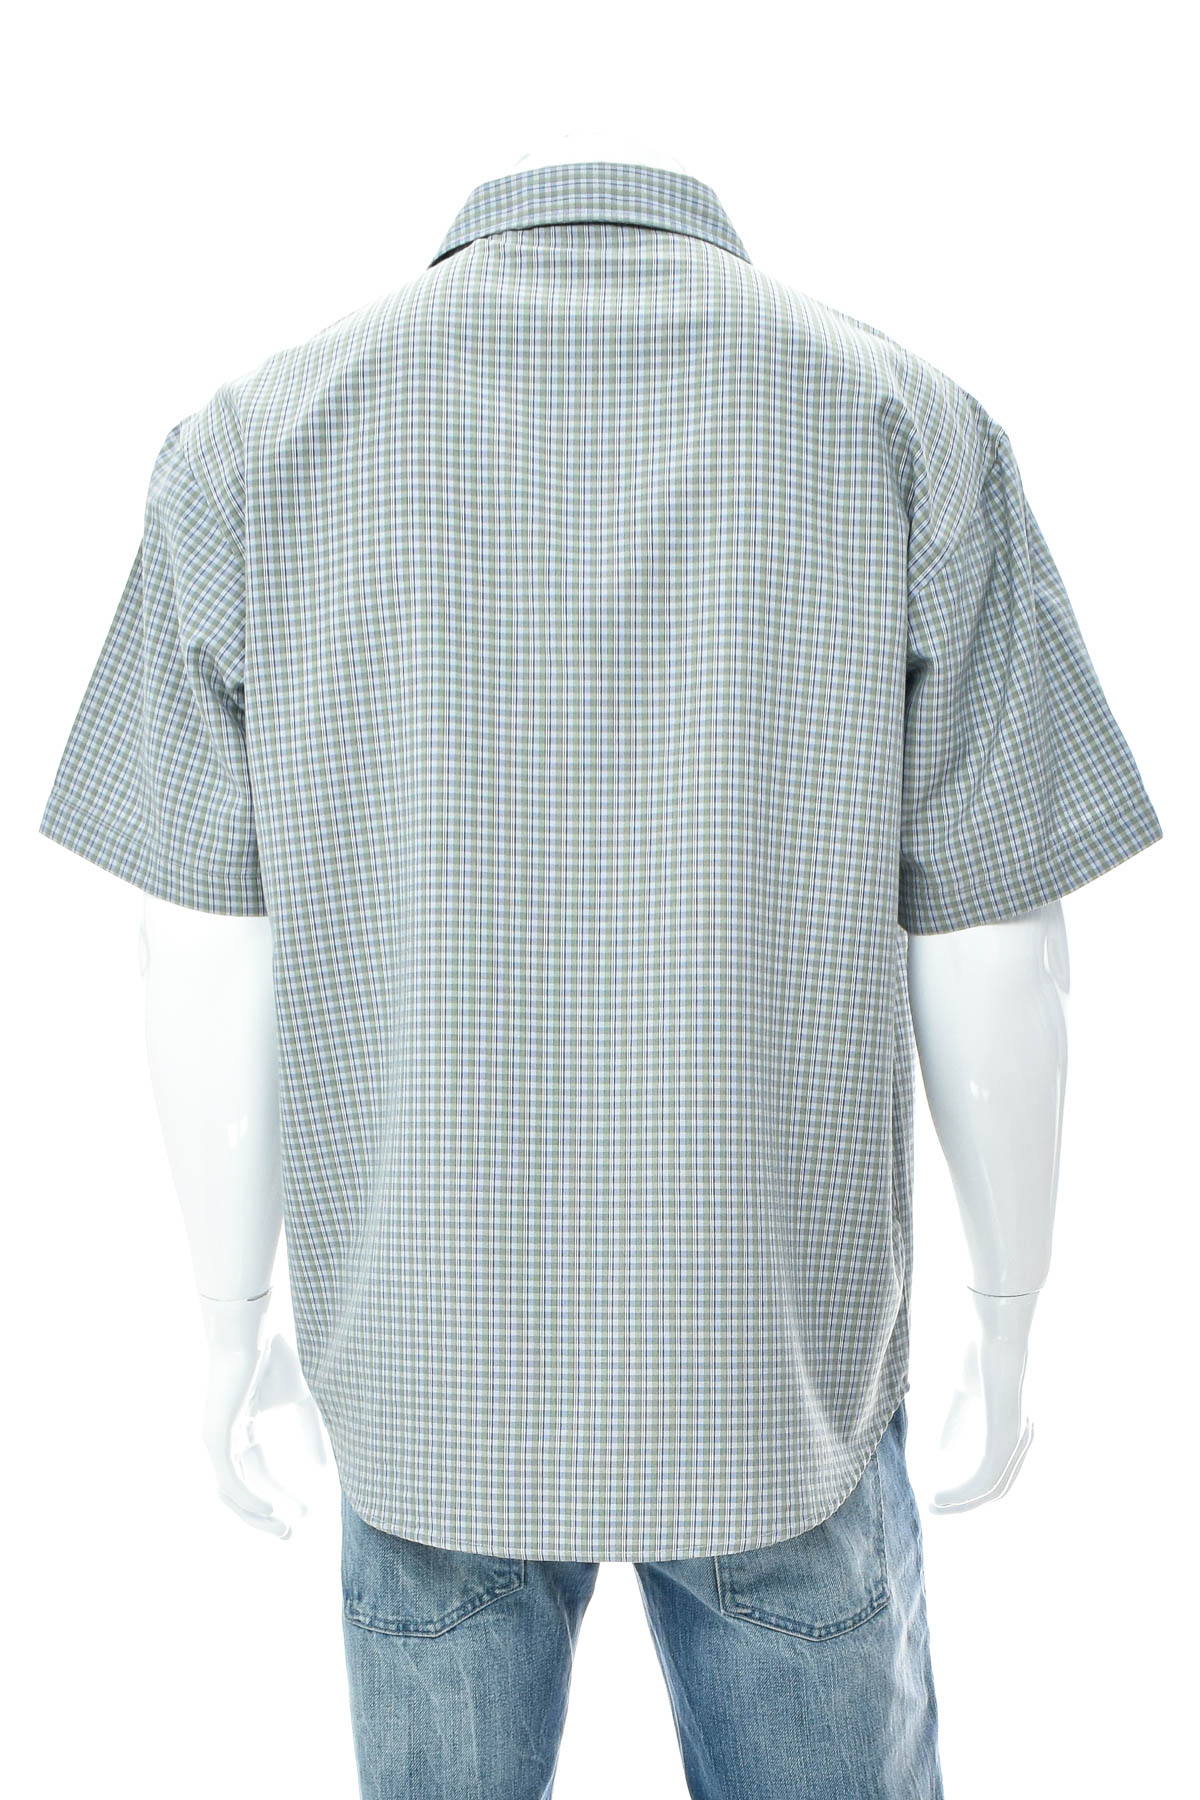 Ανδρικό πουκάμισο - McKinley - 1